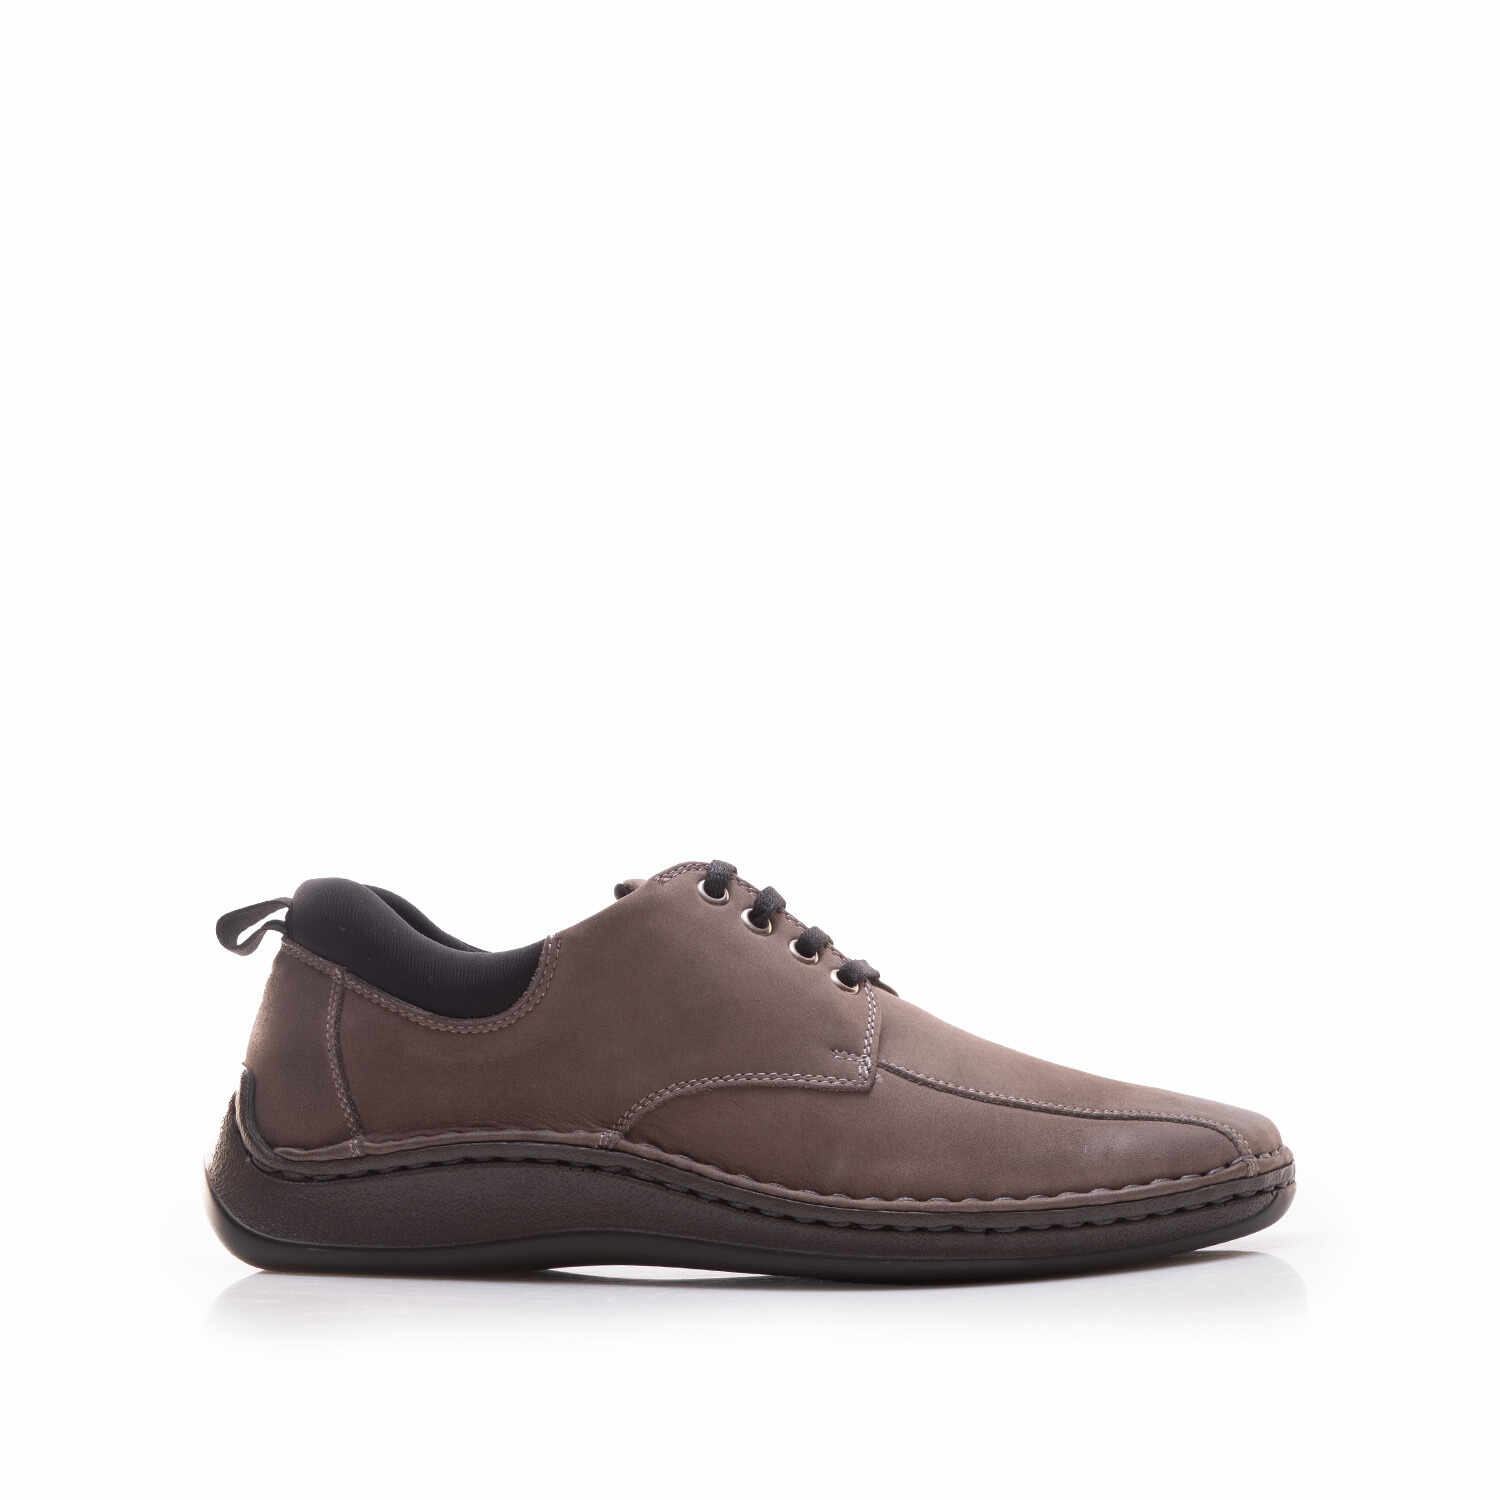 Pantofi casual bărbați din piele naturală, Leofex - 982 Gri Nabuc